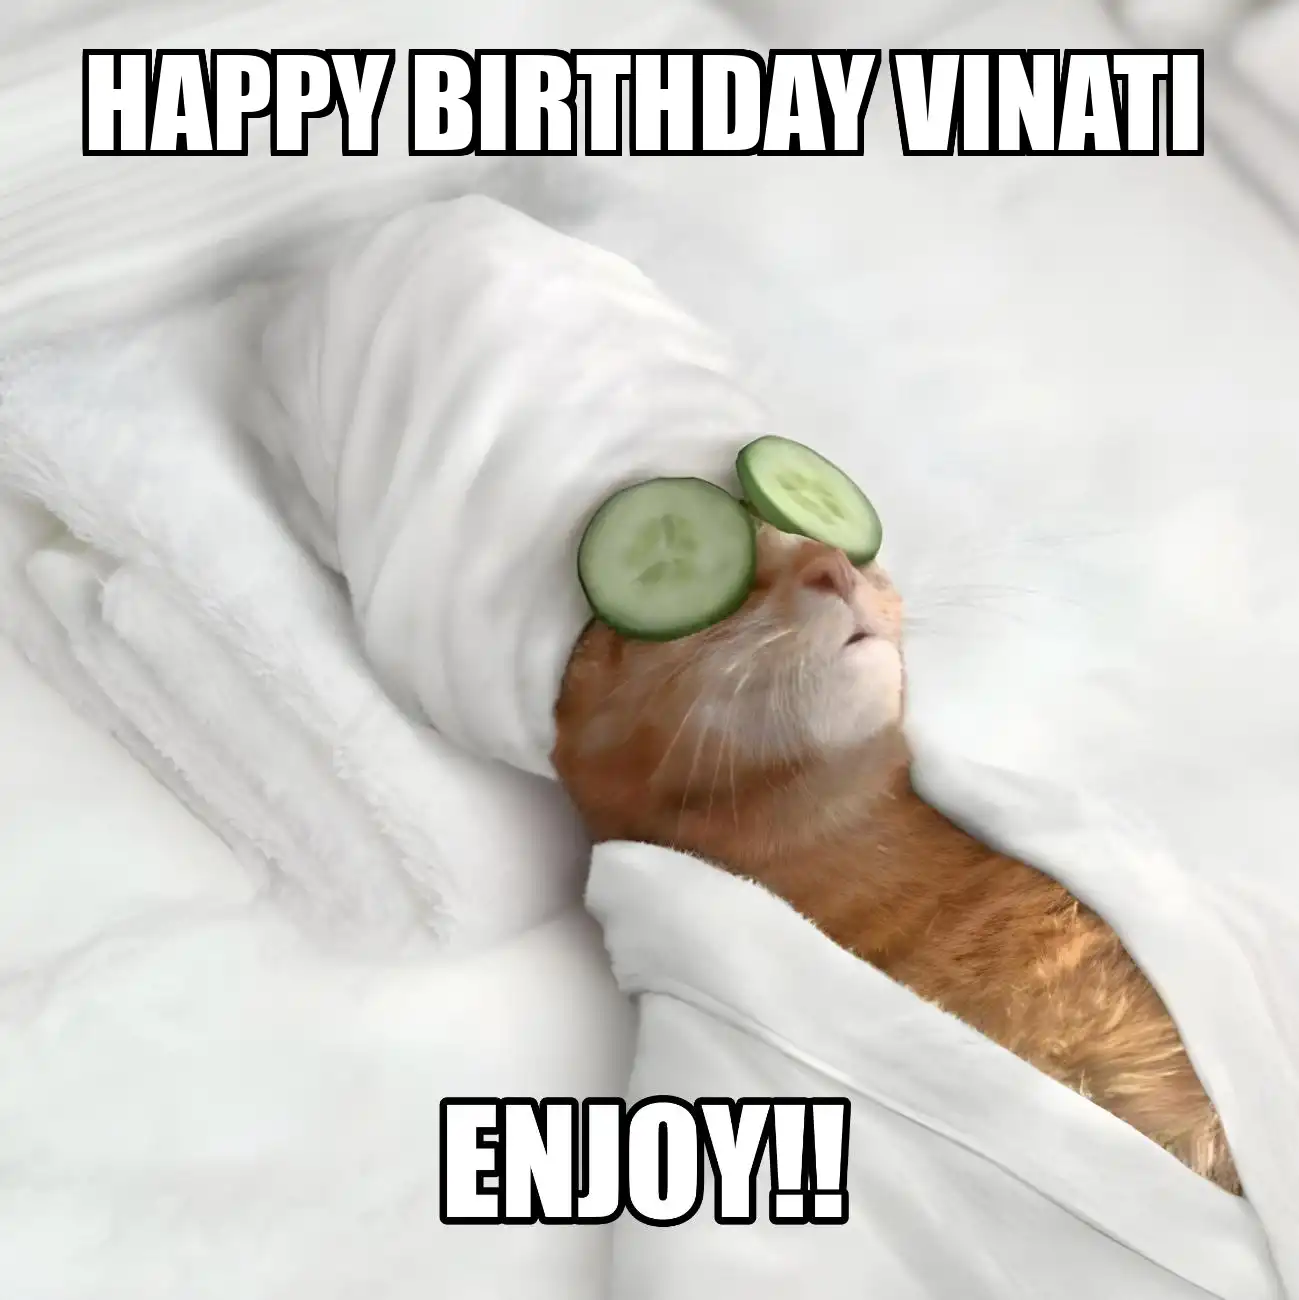 Happy Birthday Vinati Enjoy Cat Meme